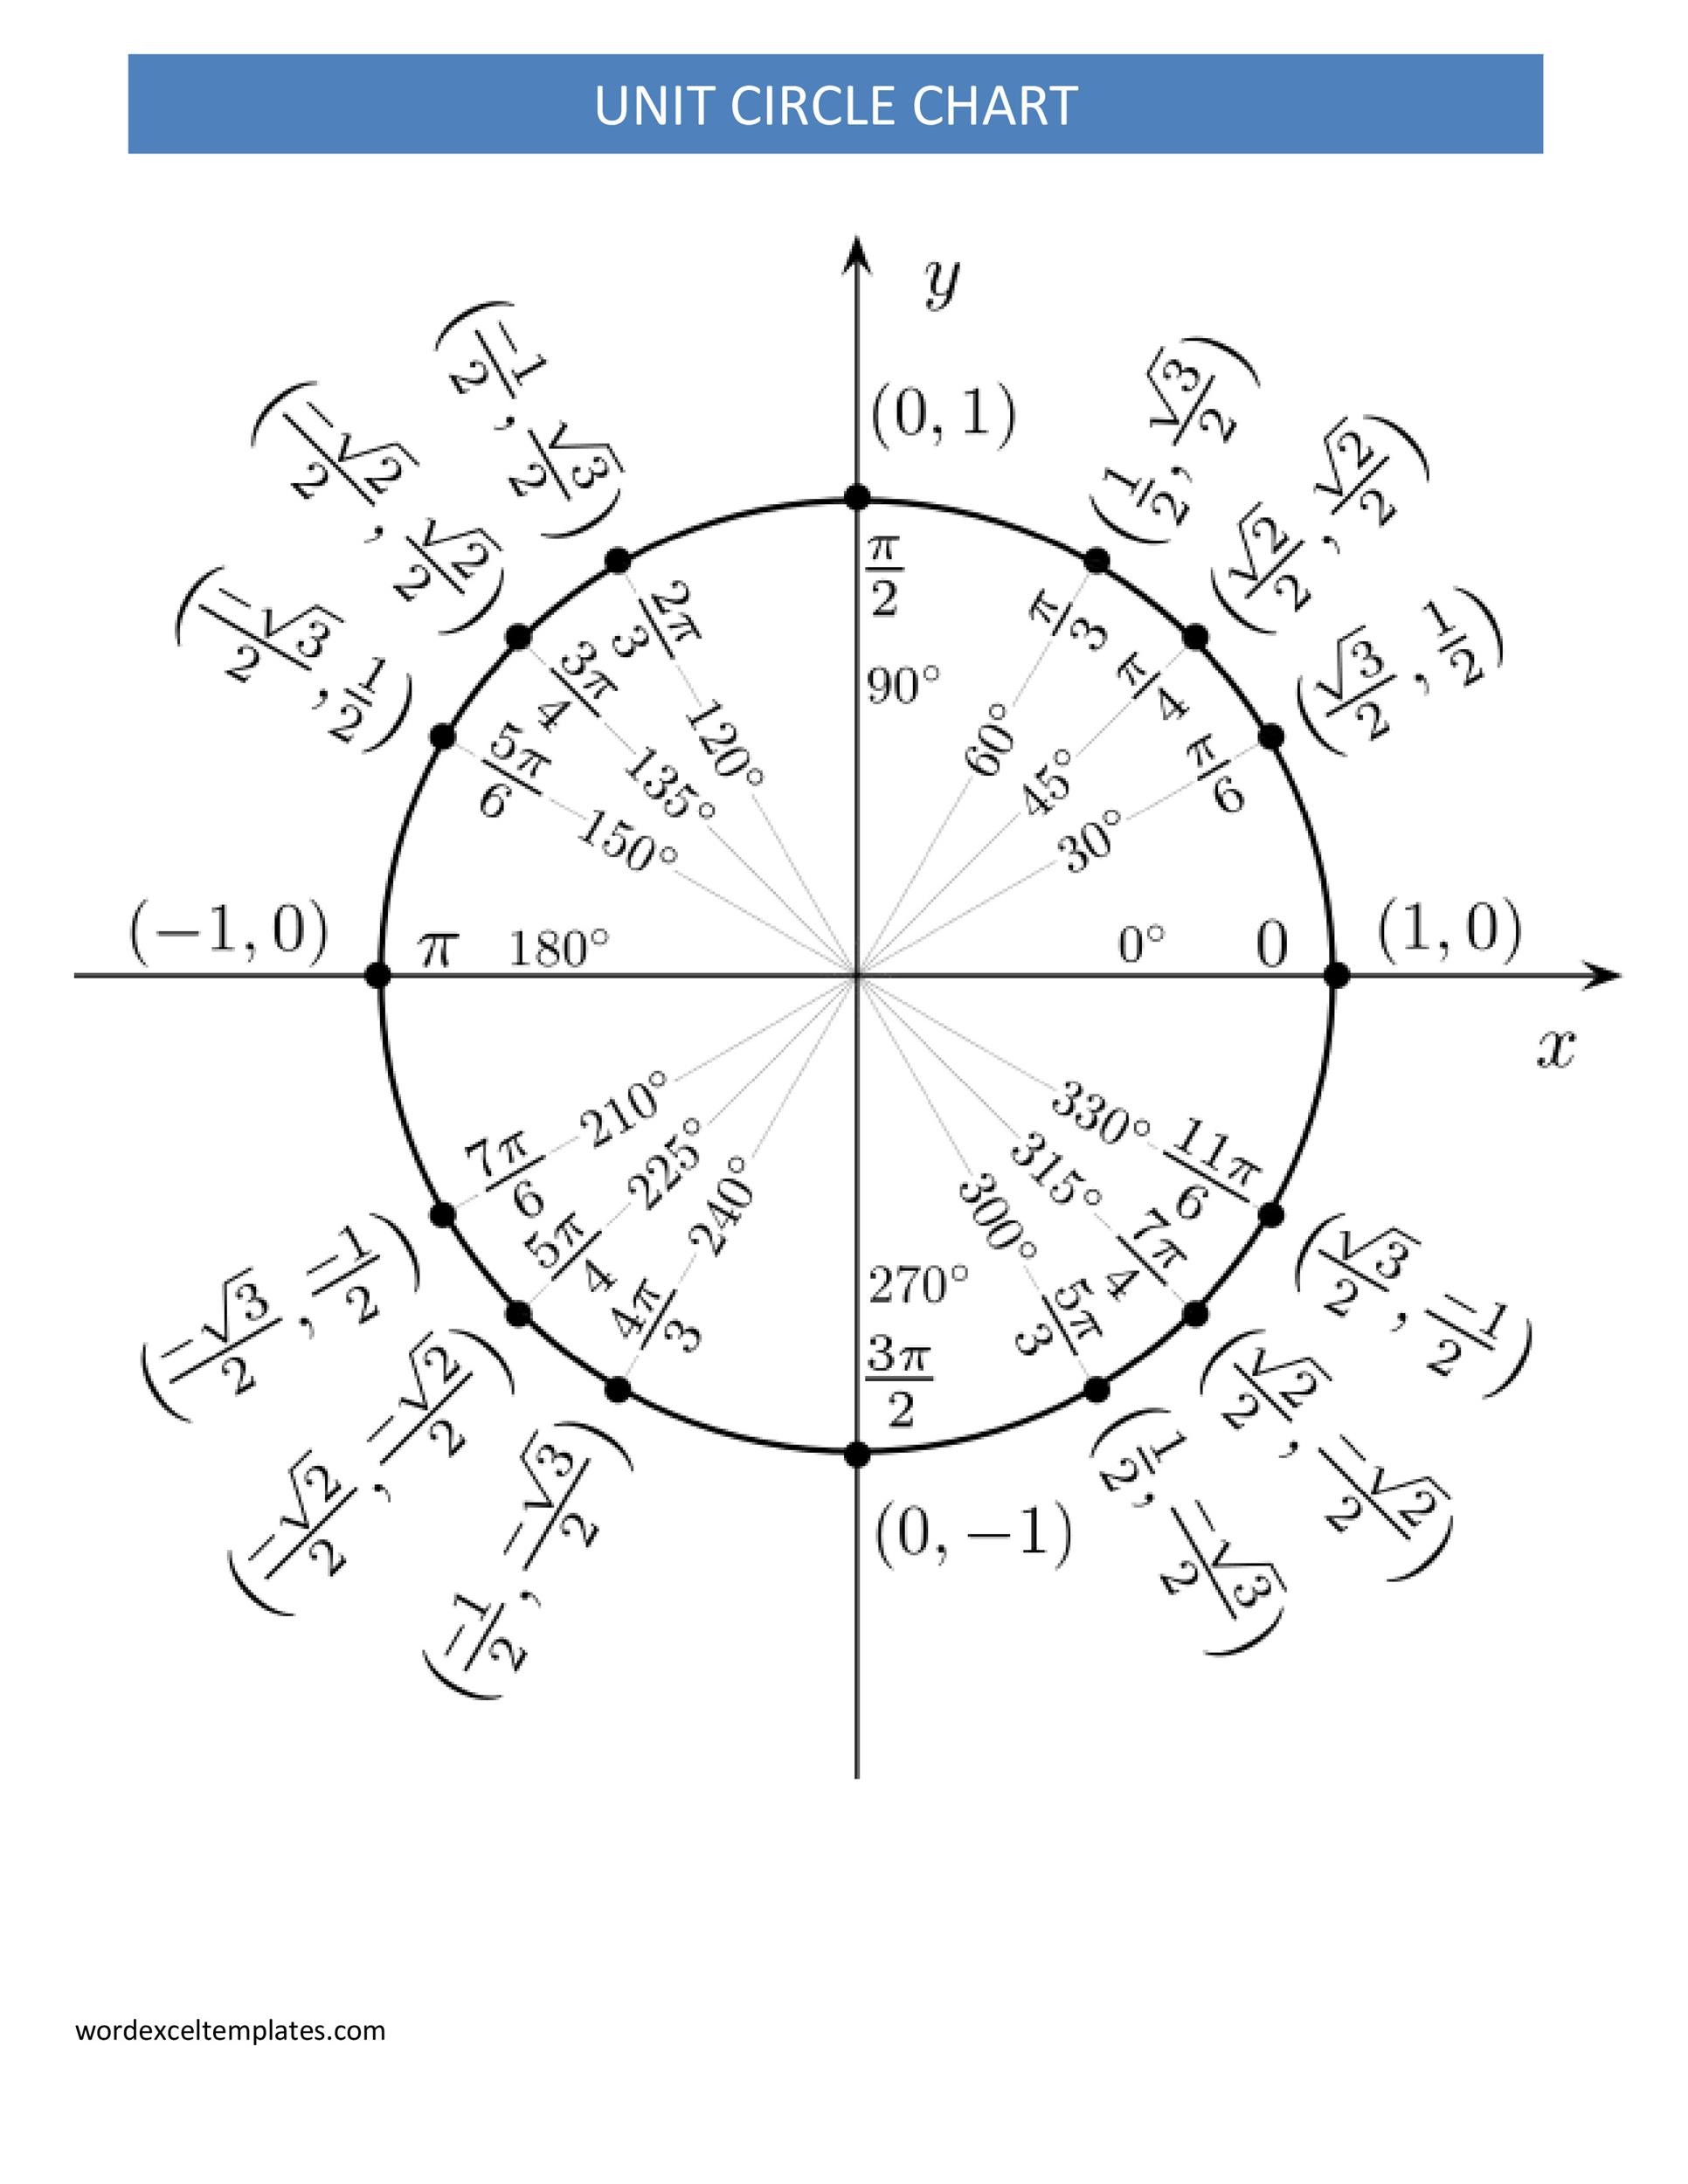 Free unit circle chart 12